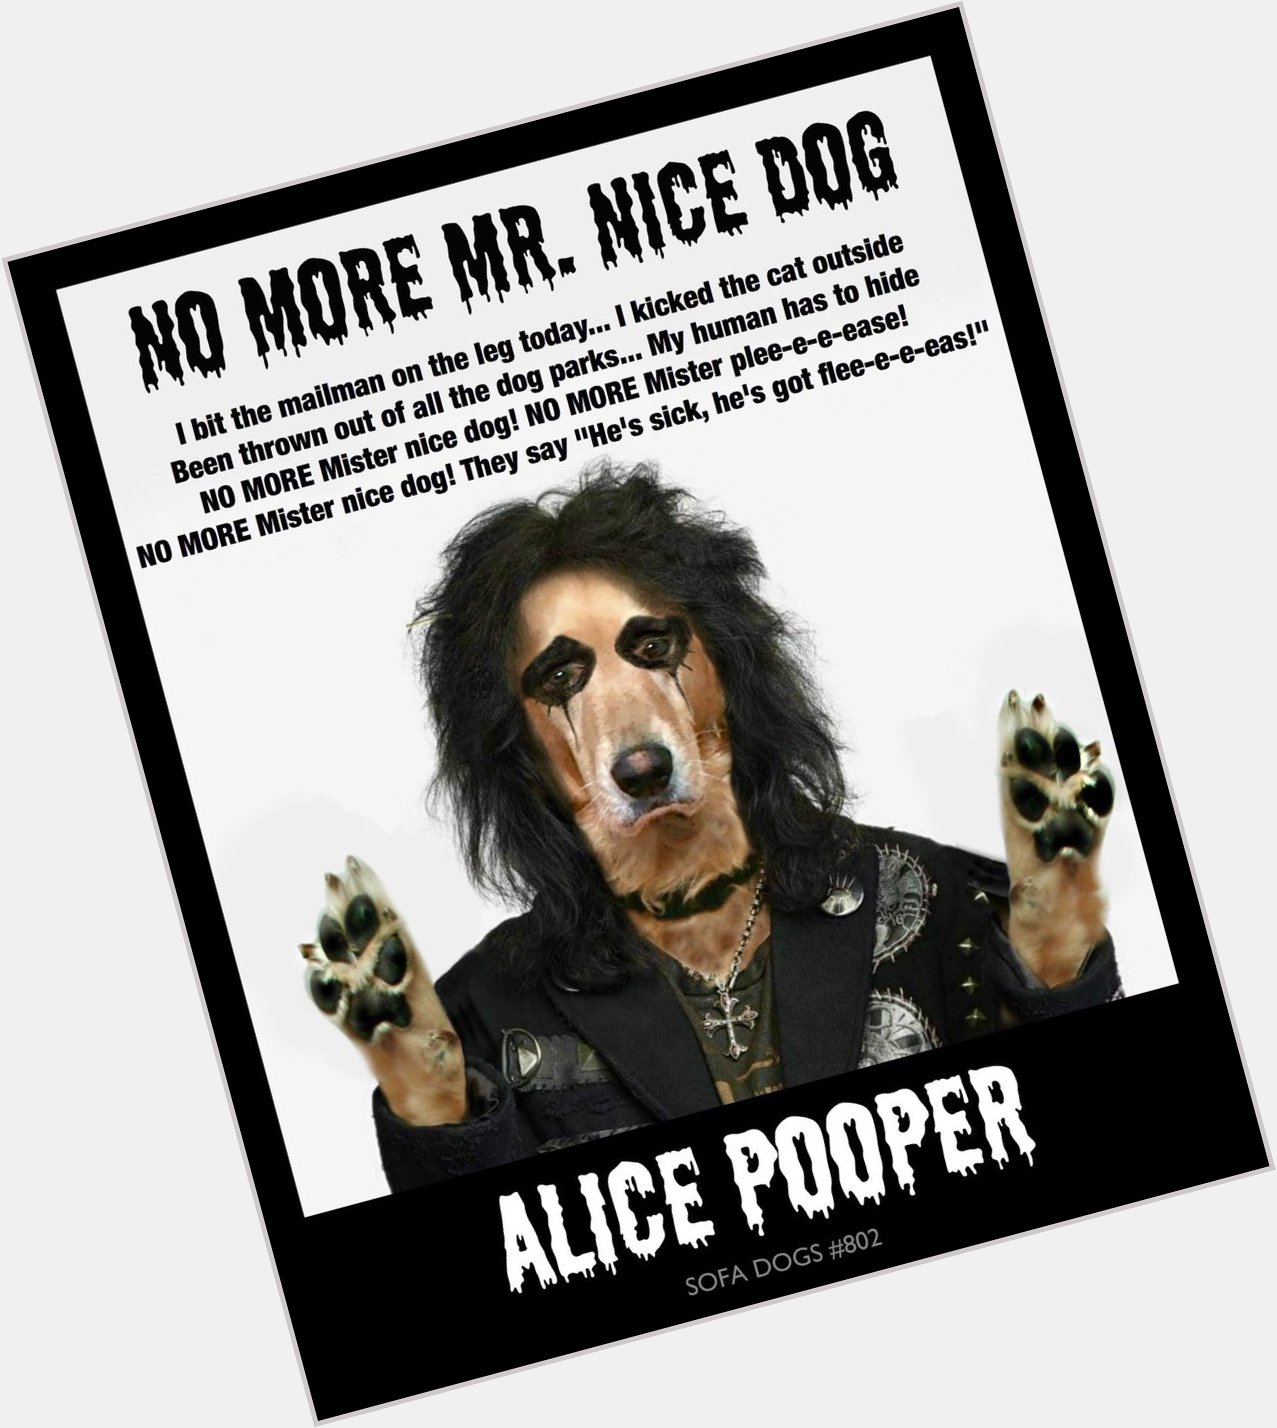 ALICE POOPER
(Happy Birthday Alice Cooper)
NEW EPISODE Sofa Dogs 